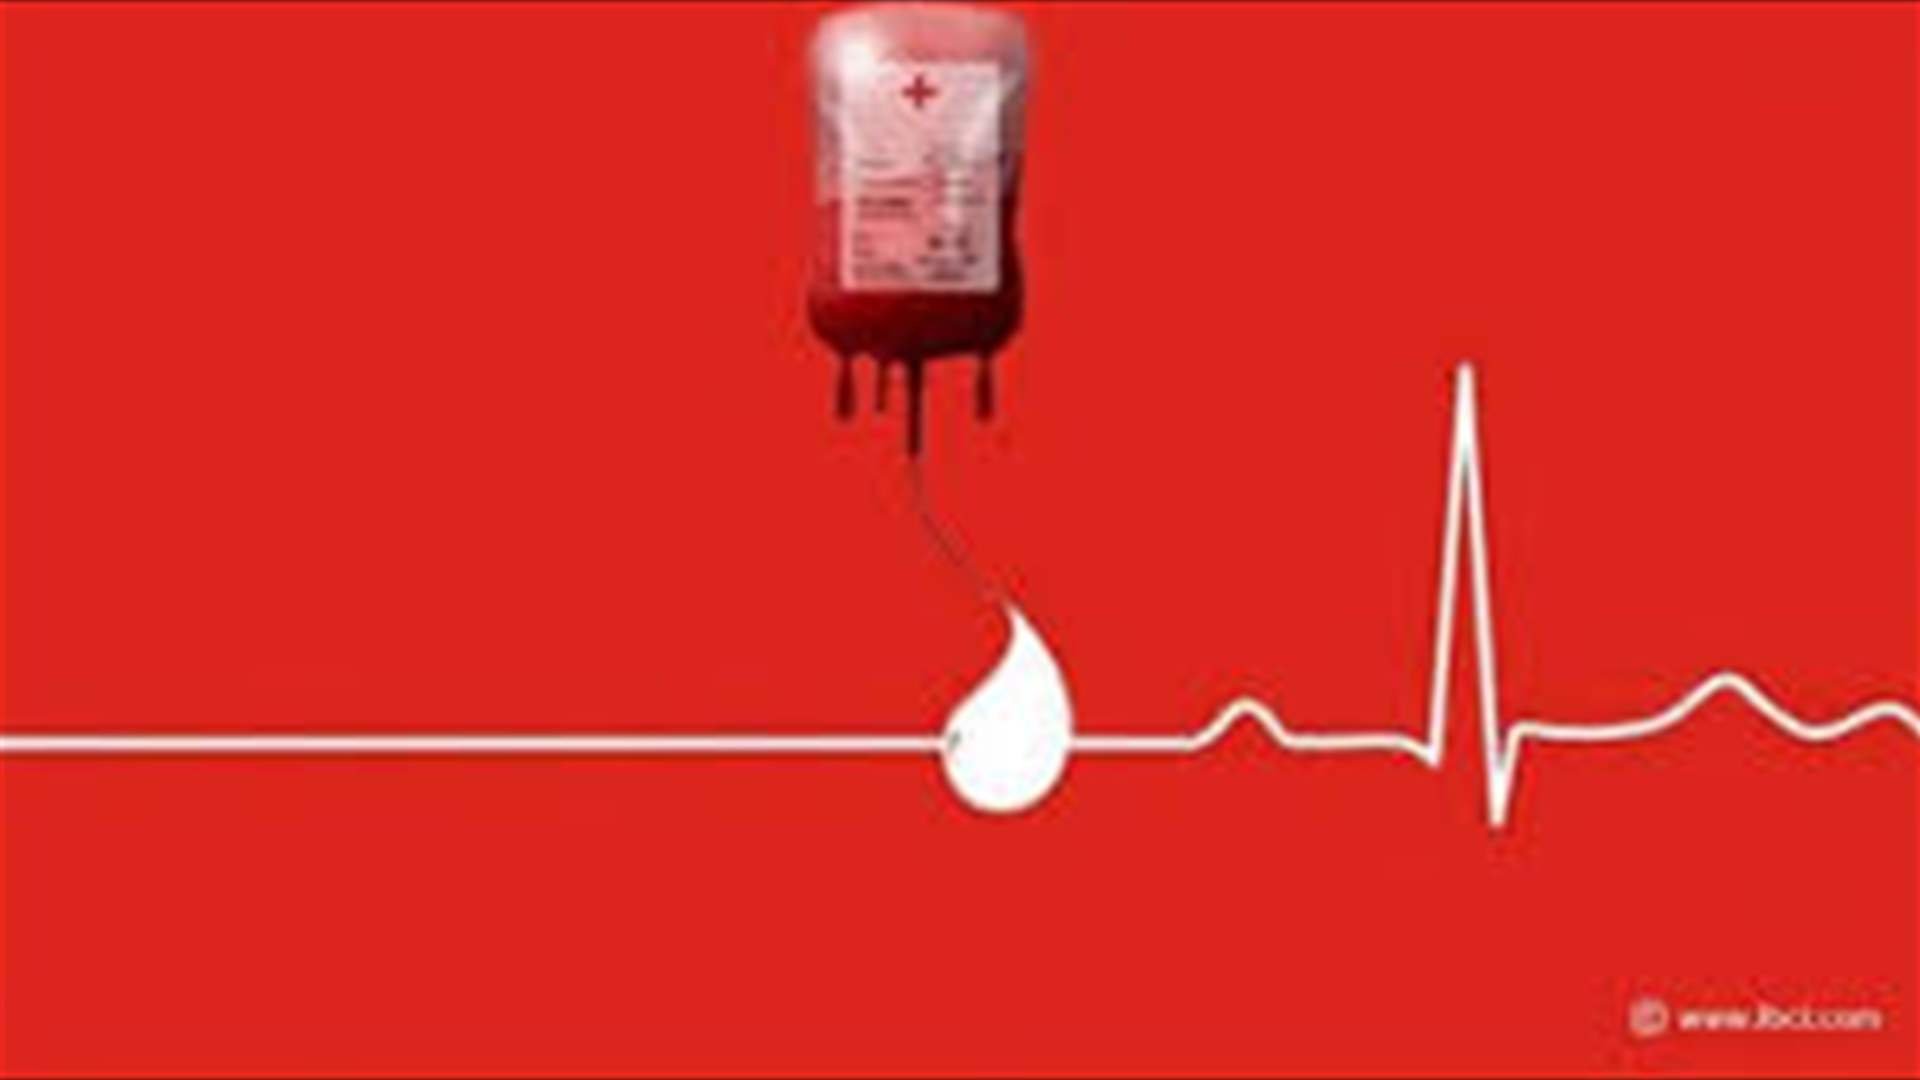 مريض بحاجة ماسّة لـ4 وحدات دم من فئة O+  في مركز الجامعة اللبنانية الأميركية الطبي للتبرع الرجاء الاتصال على الرقم 71066112 